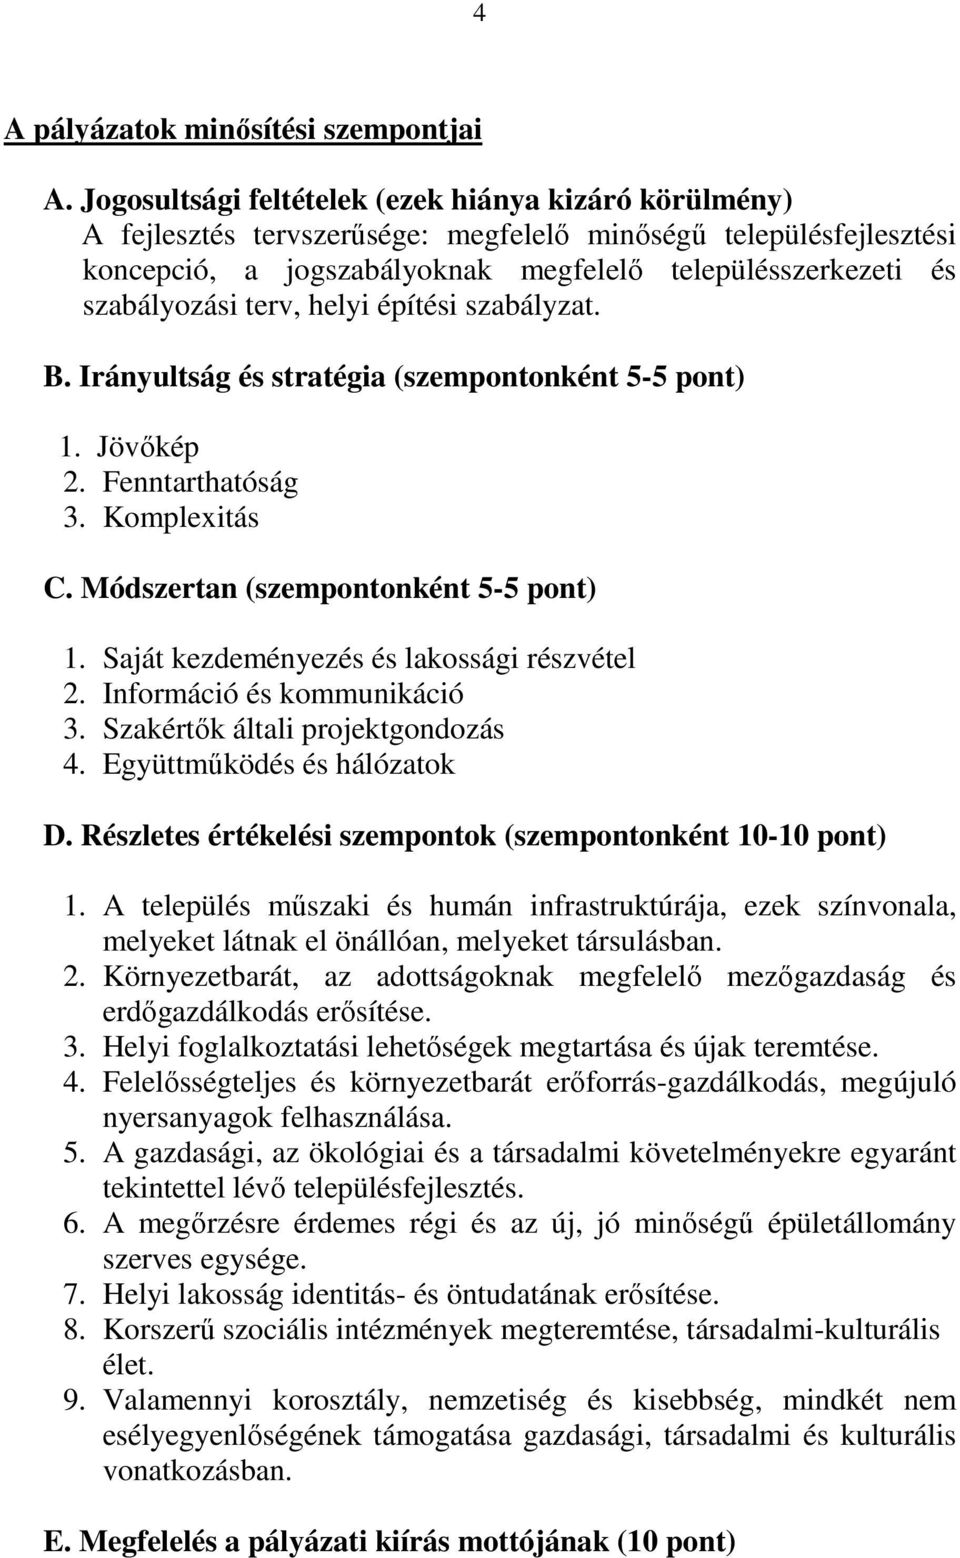 terv, helyi építési szabályzat. B. Irányultság és stratégia (szempontonként 5-5 pont) 1. Jövőkép 2. Fenntarthatóság 3. Komplexitás C. Módszertan (szempontonként 5-5 pont) 1.